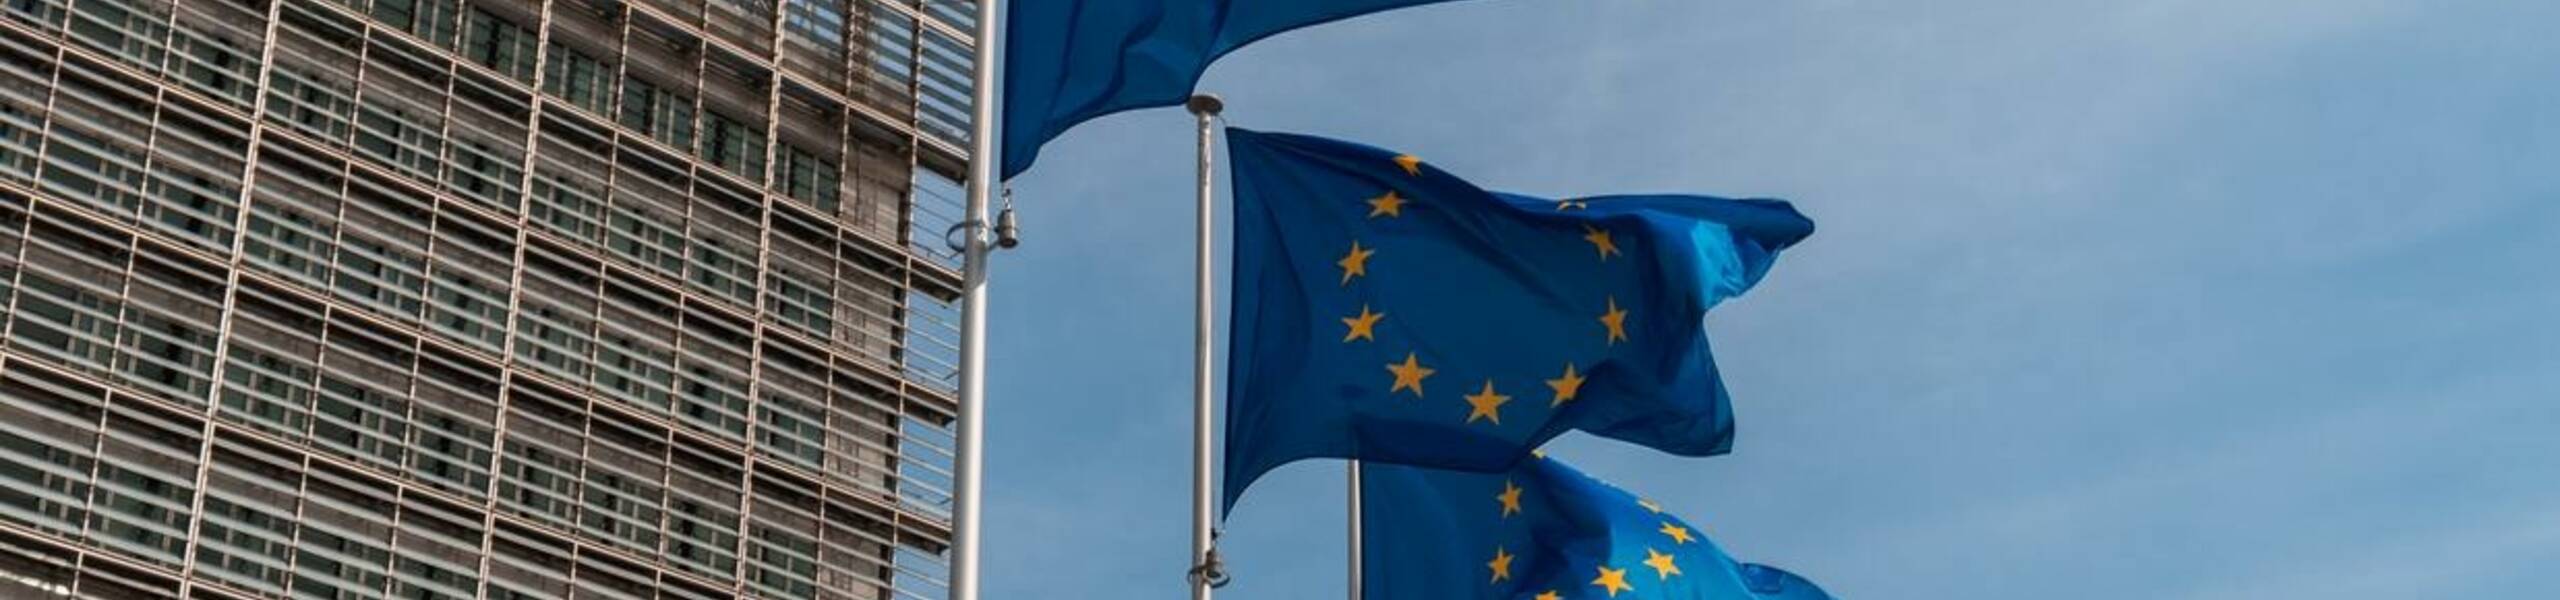 Pasar Saham Eropa Terhindar dari “Crash” Berkat Sektor Perbankan yang Kembali Stabil